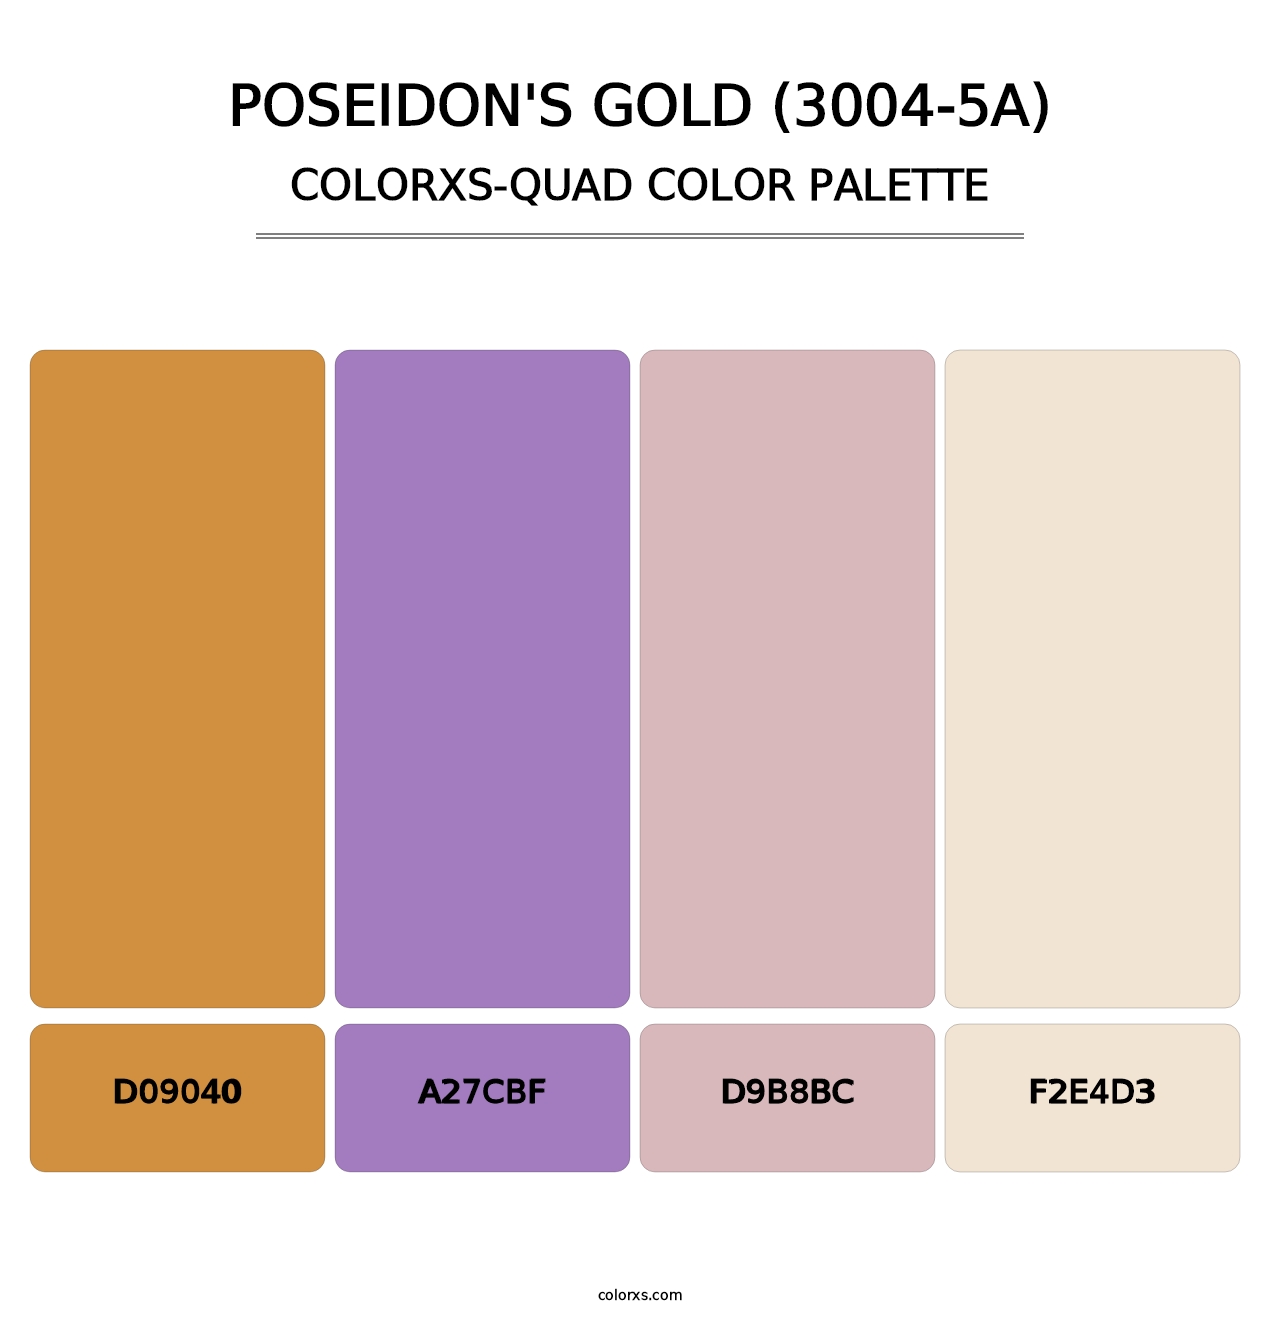 Poseidon's Gold (3004-5A) - Colorxs Quad Palette